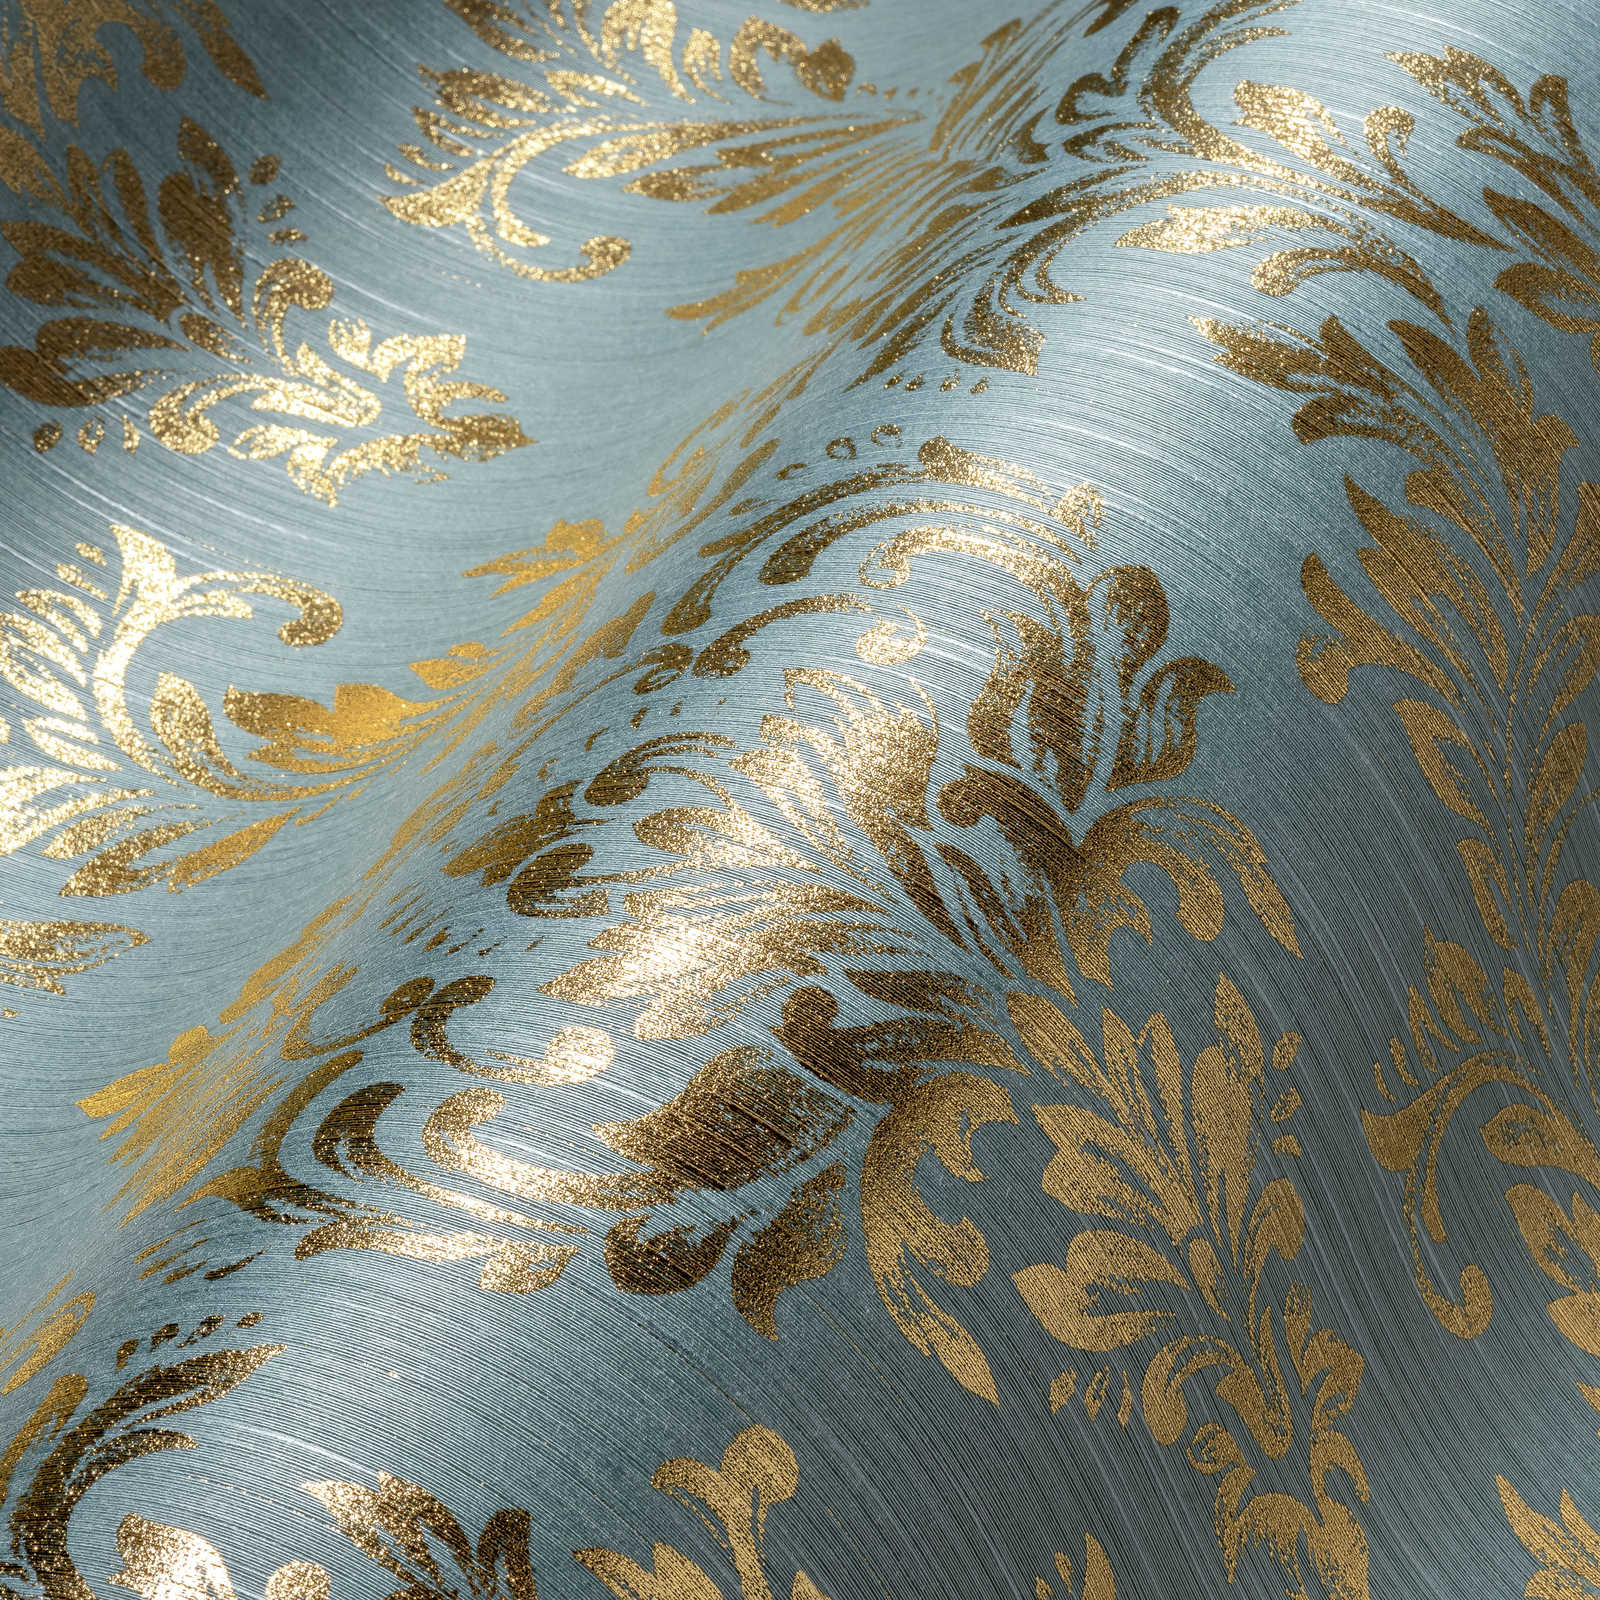             Ornamenteel behang met gouden glittereffect - goud, blauw, groen
        